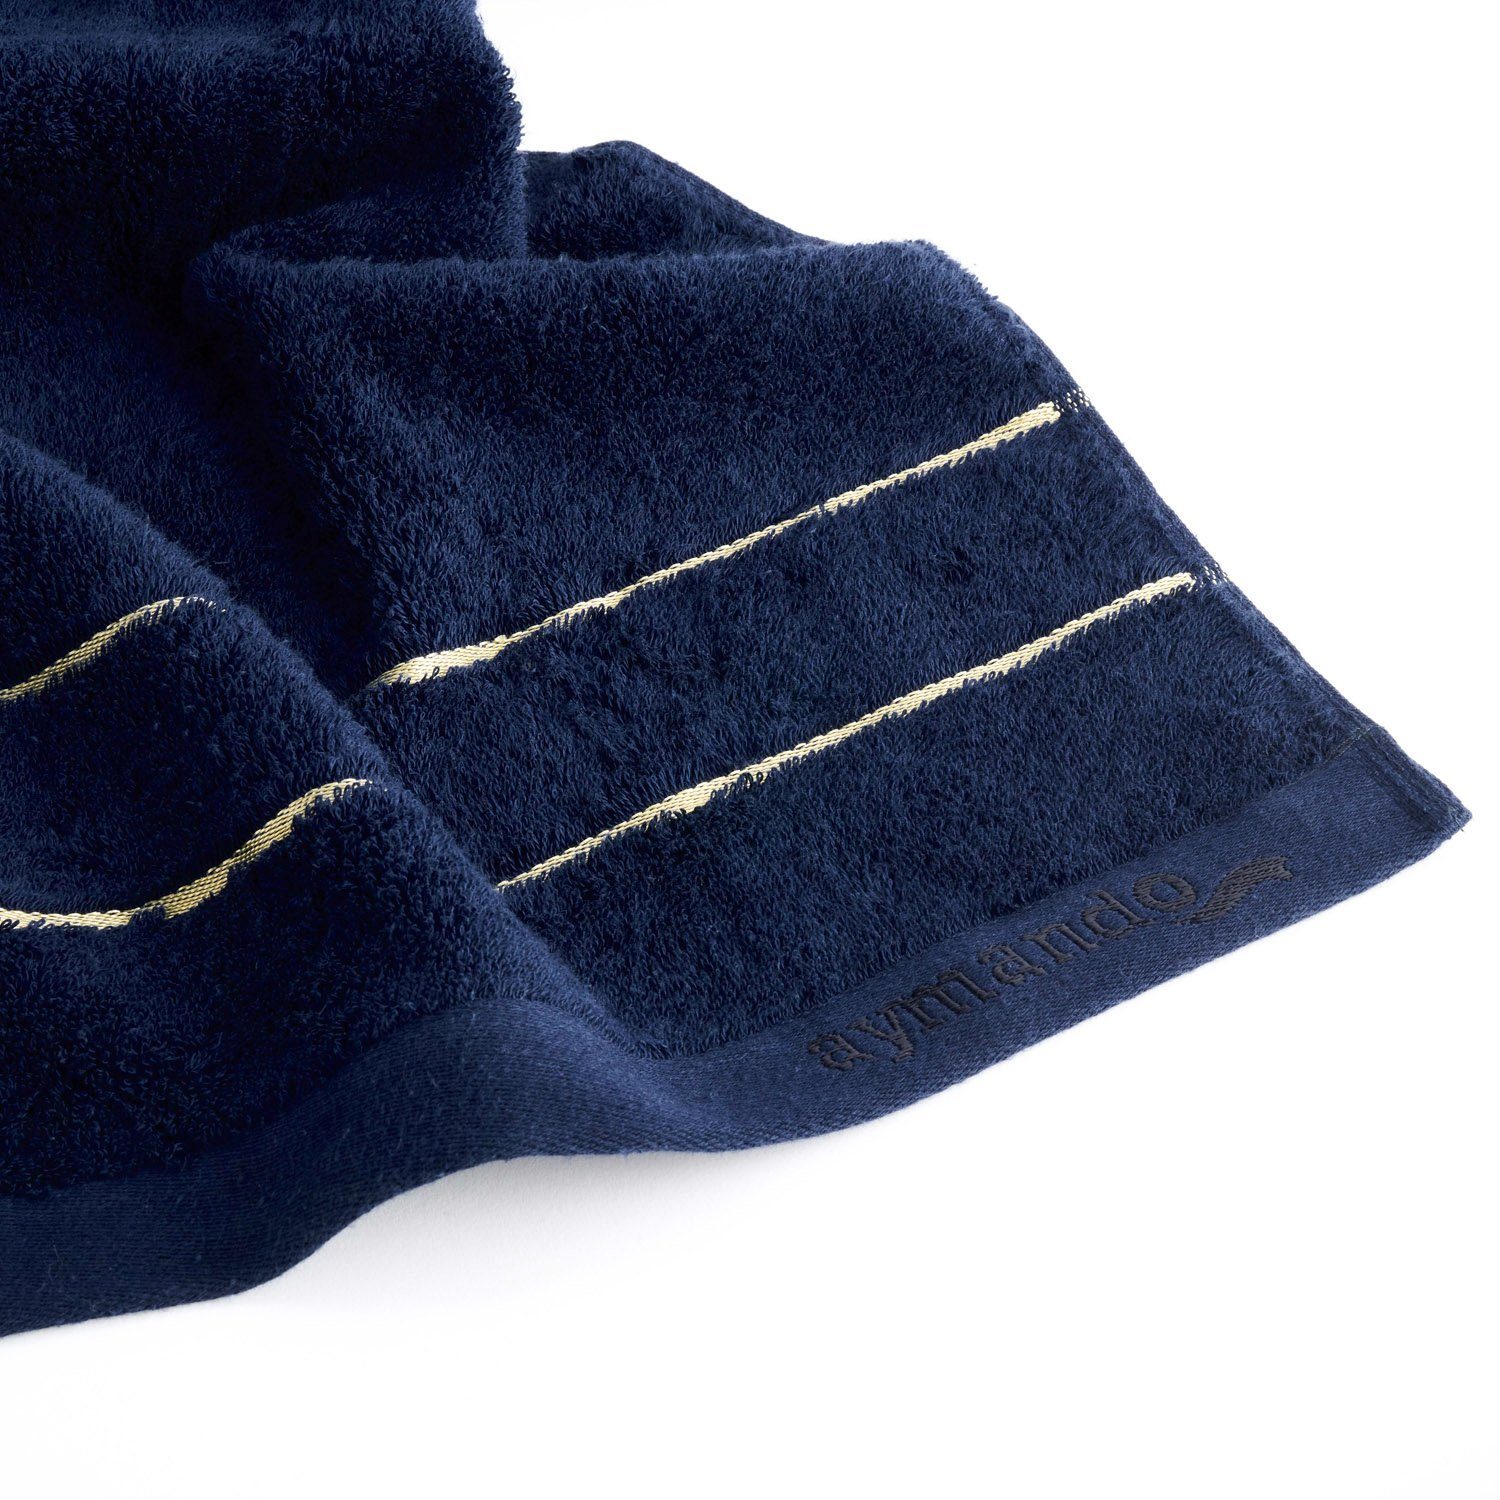 (1-St), Aymando 600 Handtuch 100% Baumwolle Dubai g/m², Kollektion, aus Dark 70x140cm Baumwolle ägyptischer Blue-Gold Badetuch